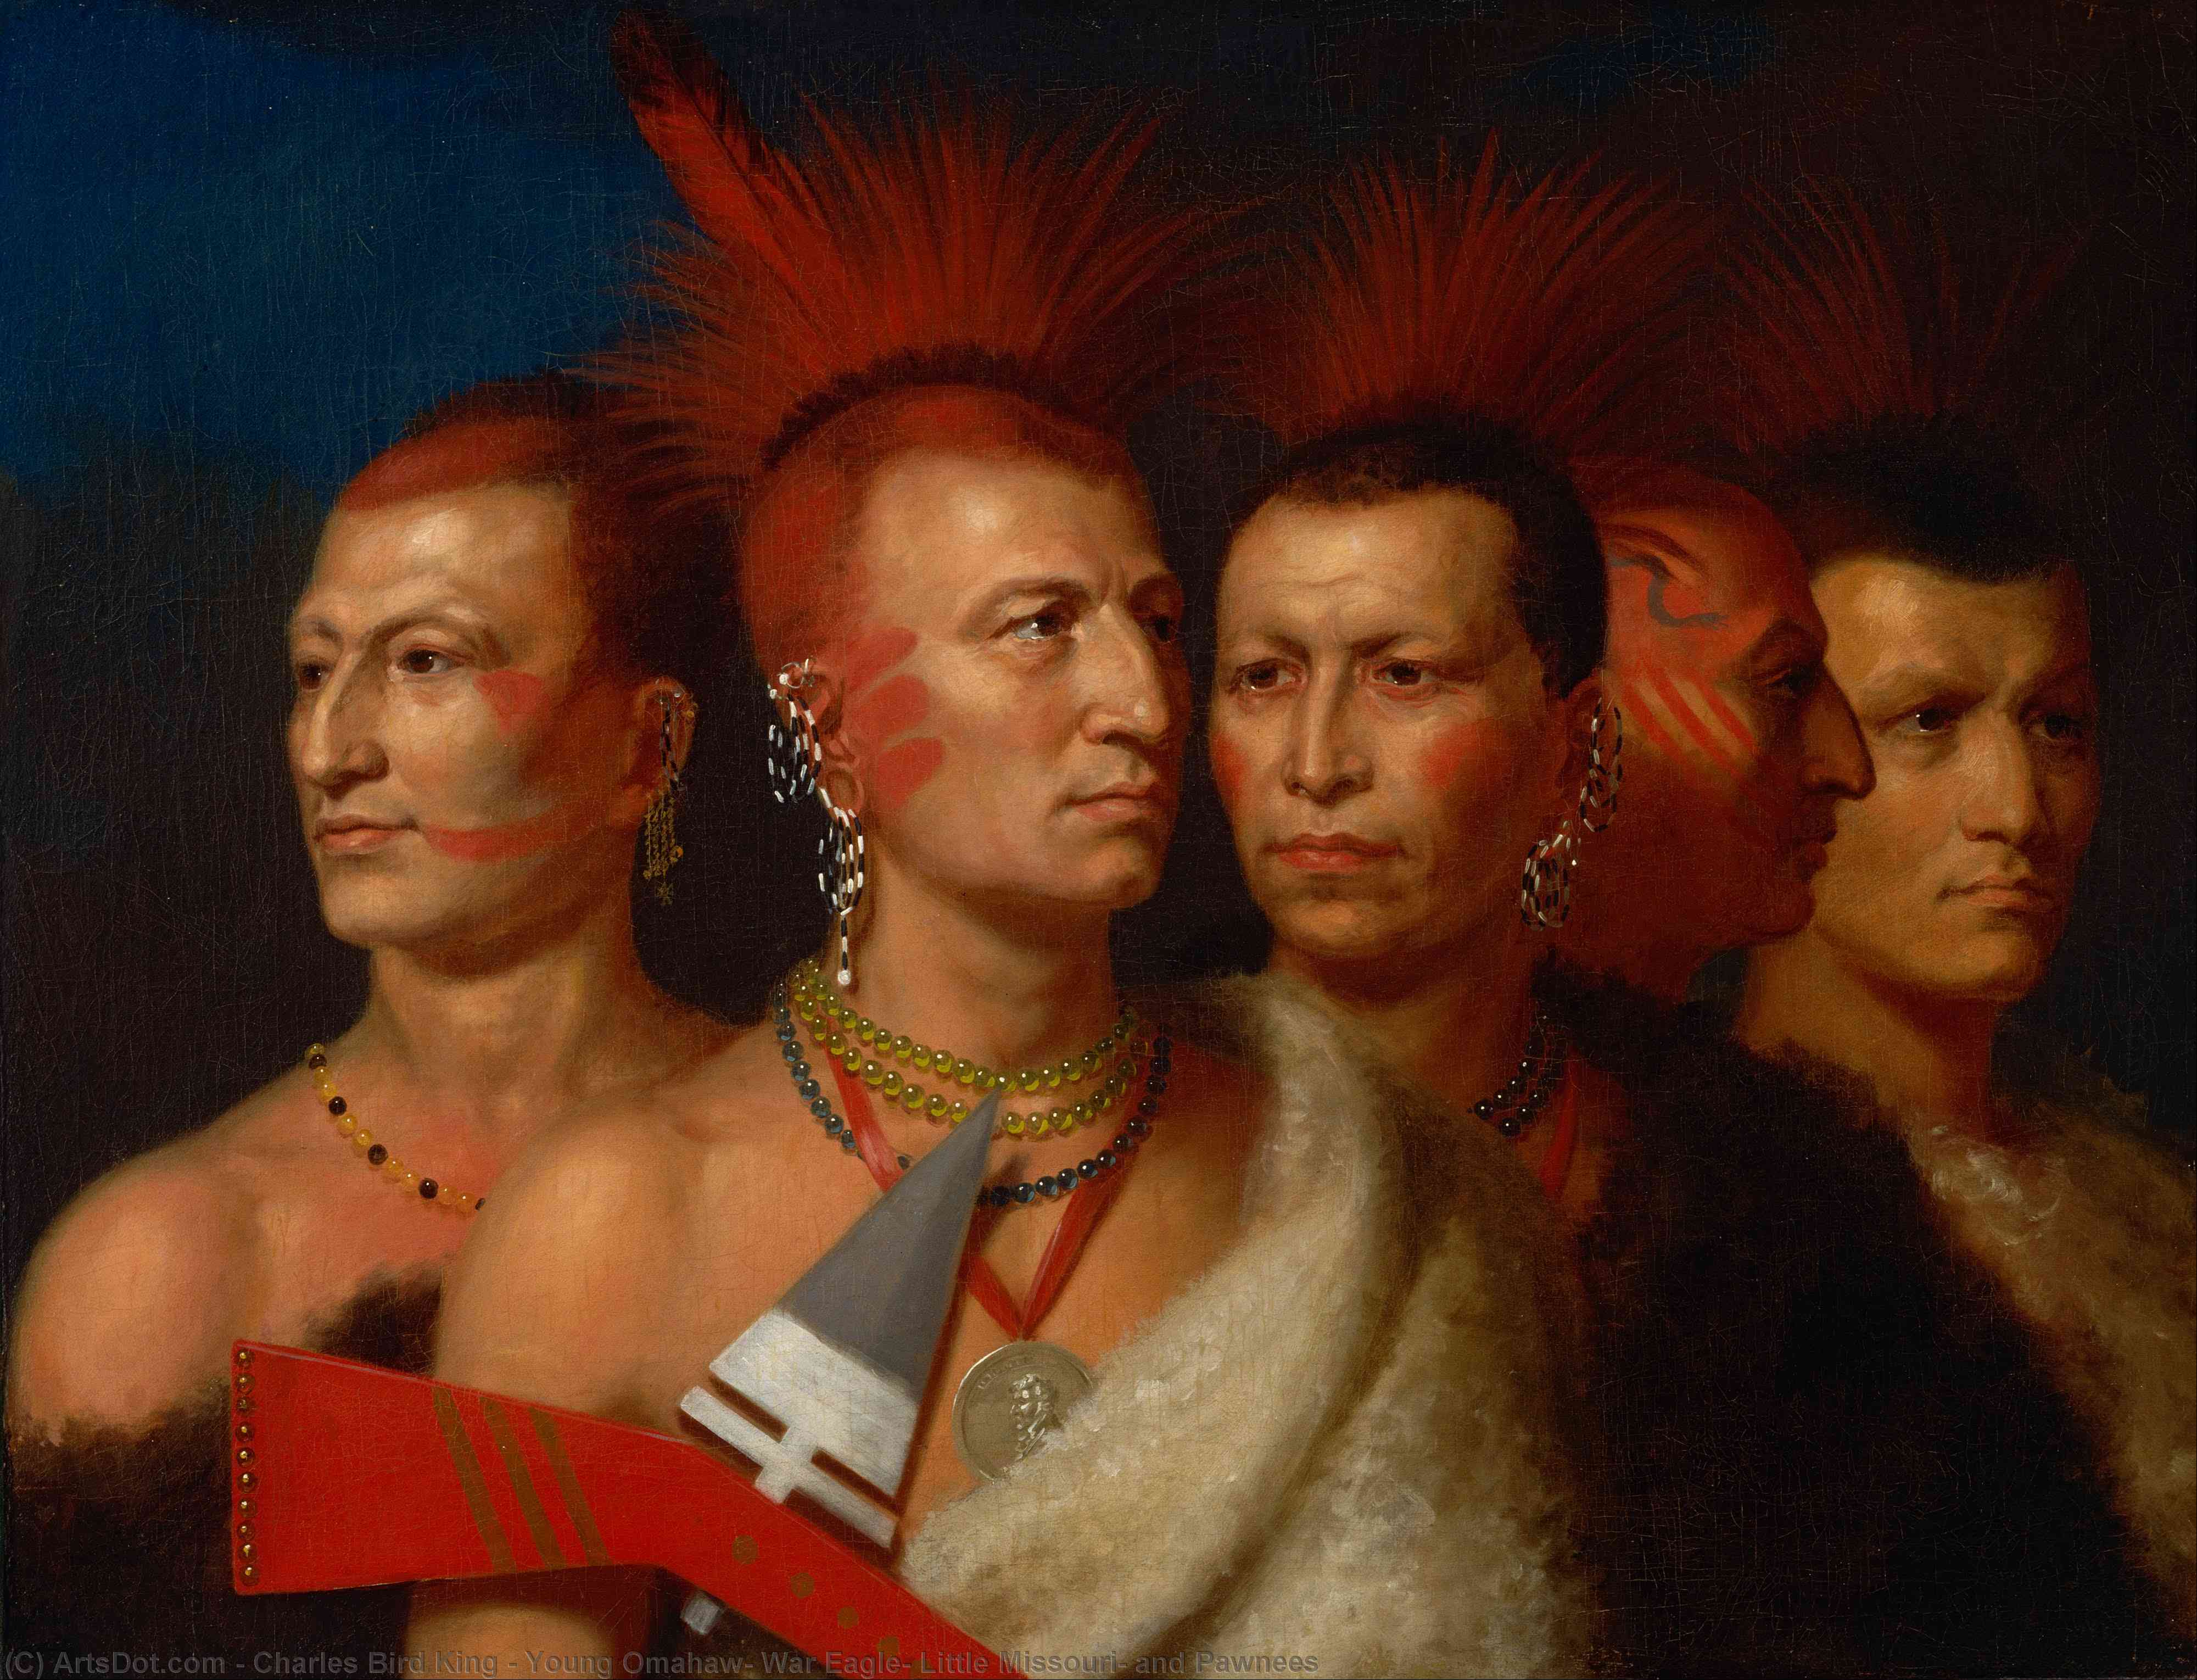 Comprar Reproducciones De Arte Del Museo Young Omahaw, War Eagle, Little Missouri y Pawnees, 1821 de Charles Bird King (1785-1862, United States) | ArtsDot.com